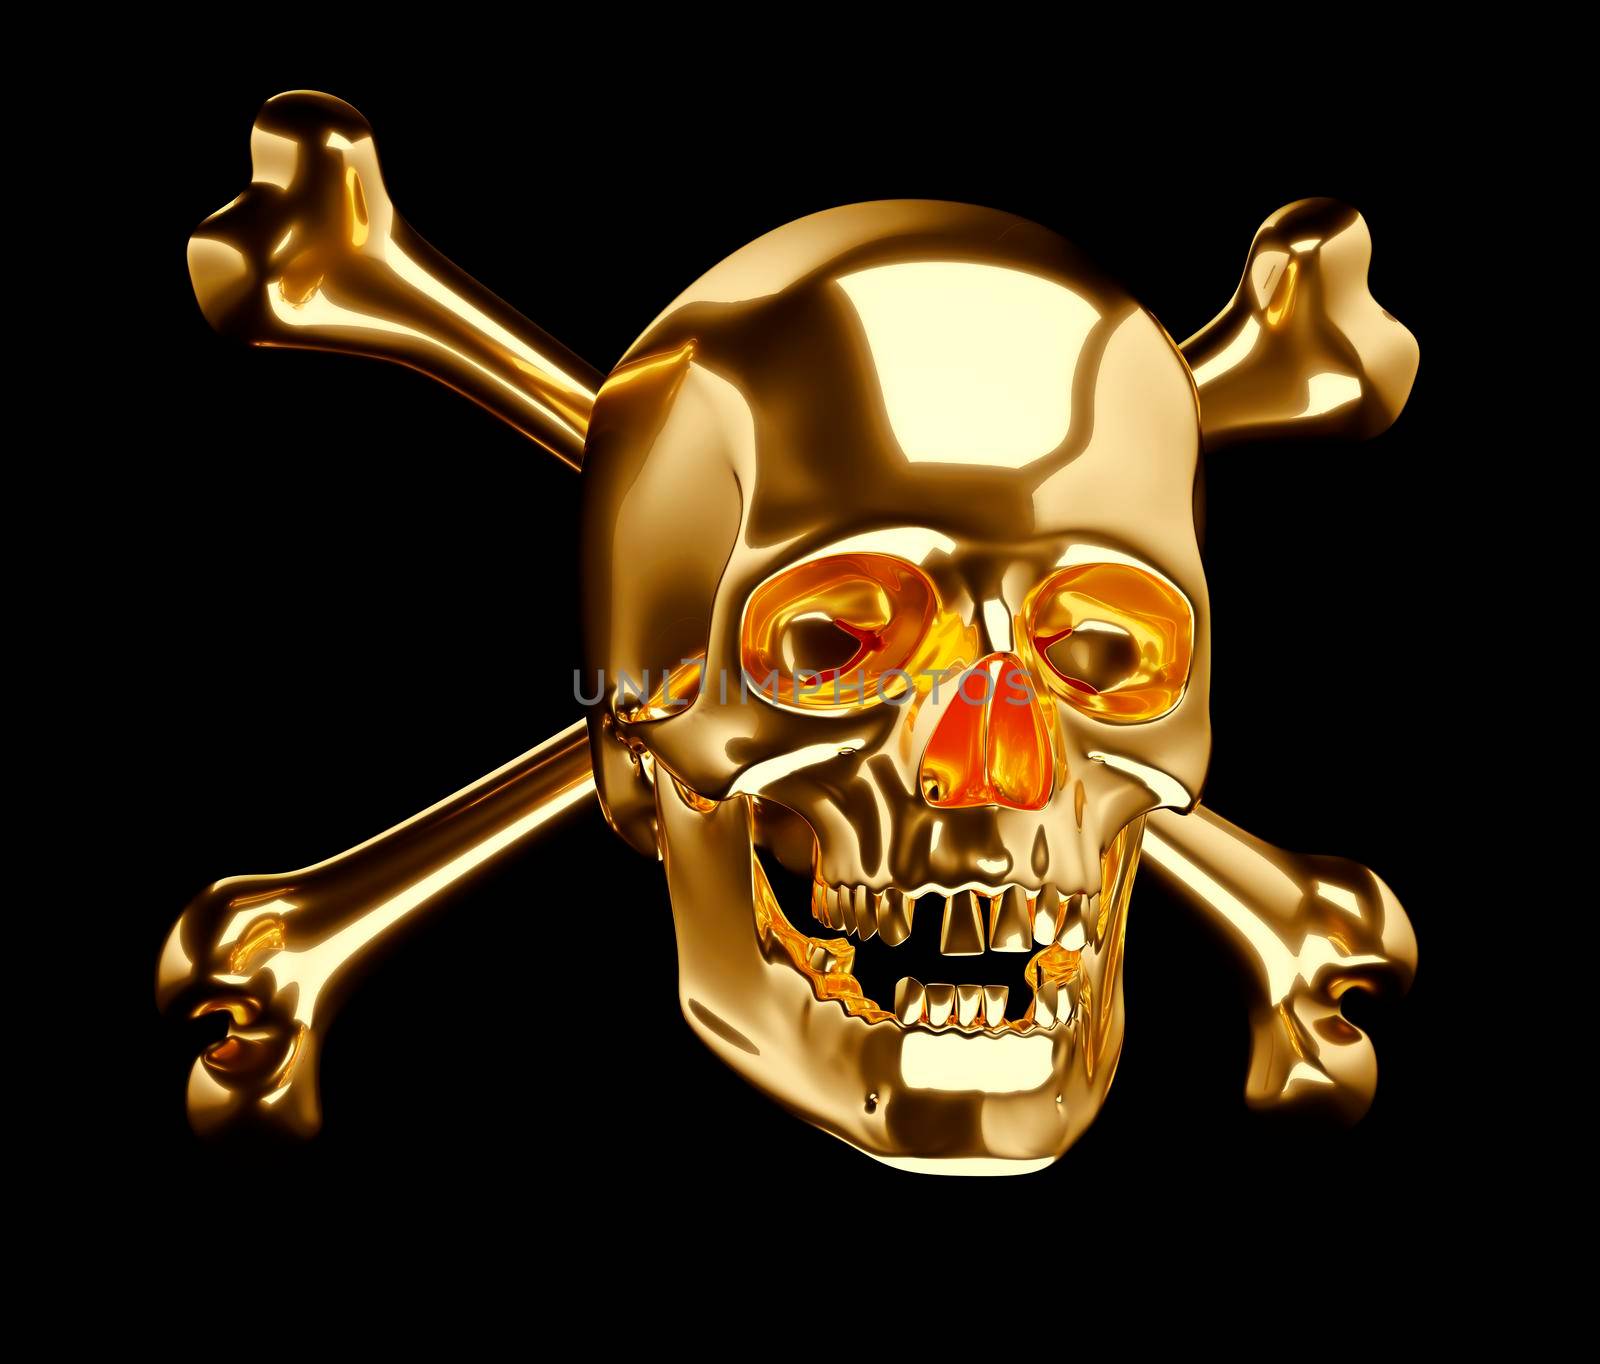 Golden Skull with cross bones or totenkopf  by Arsgera